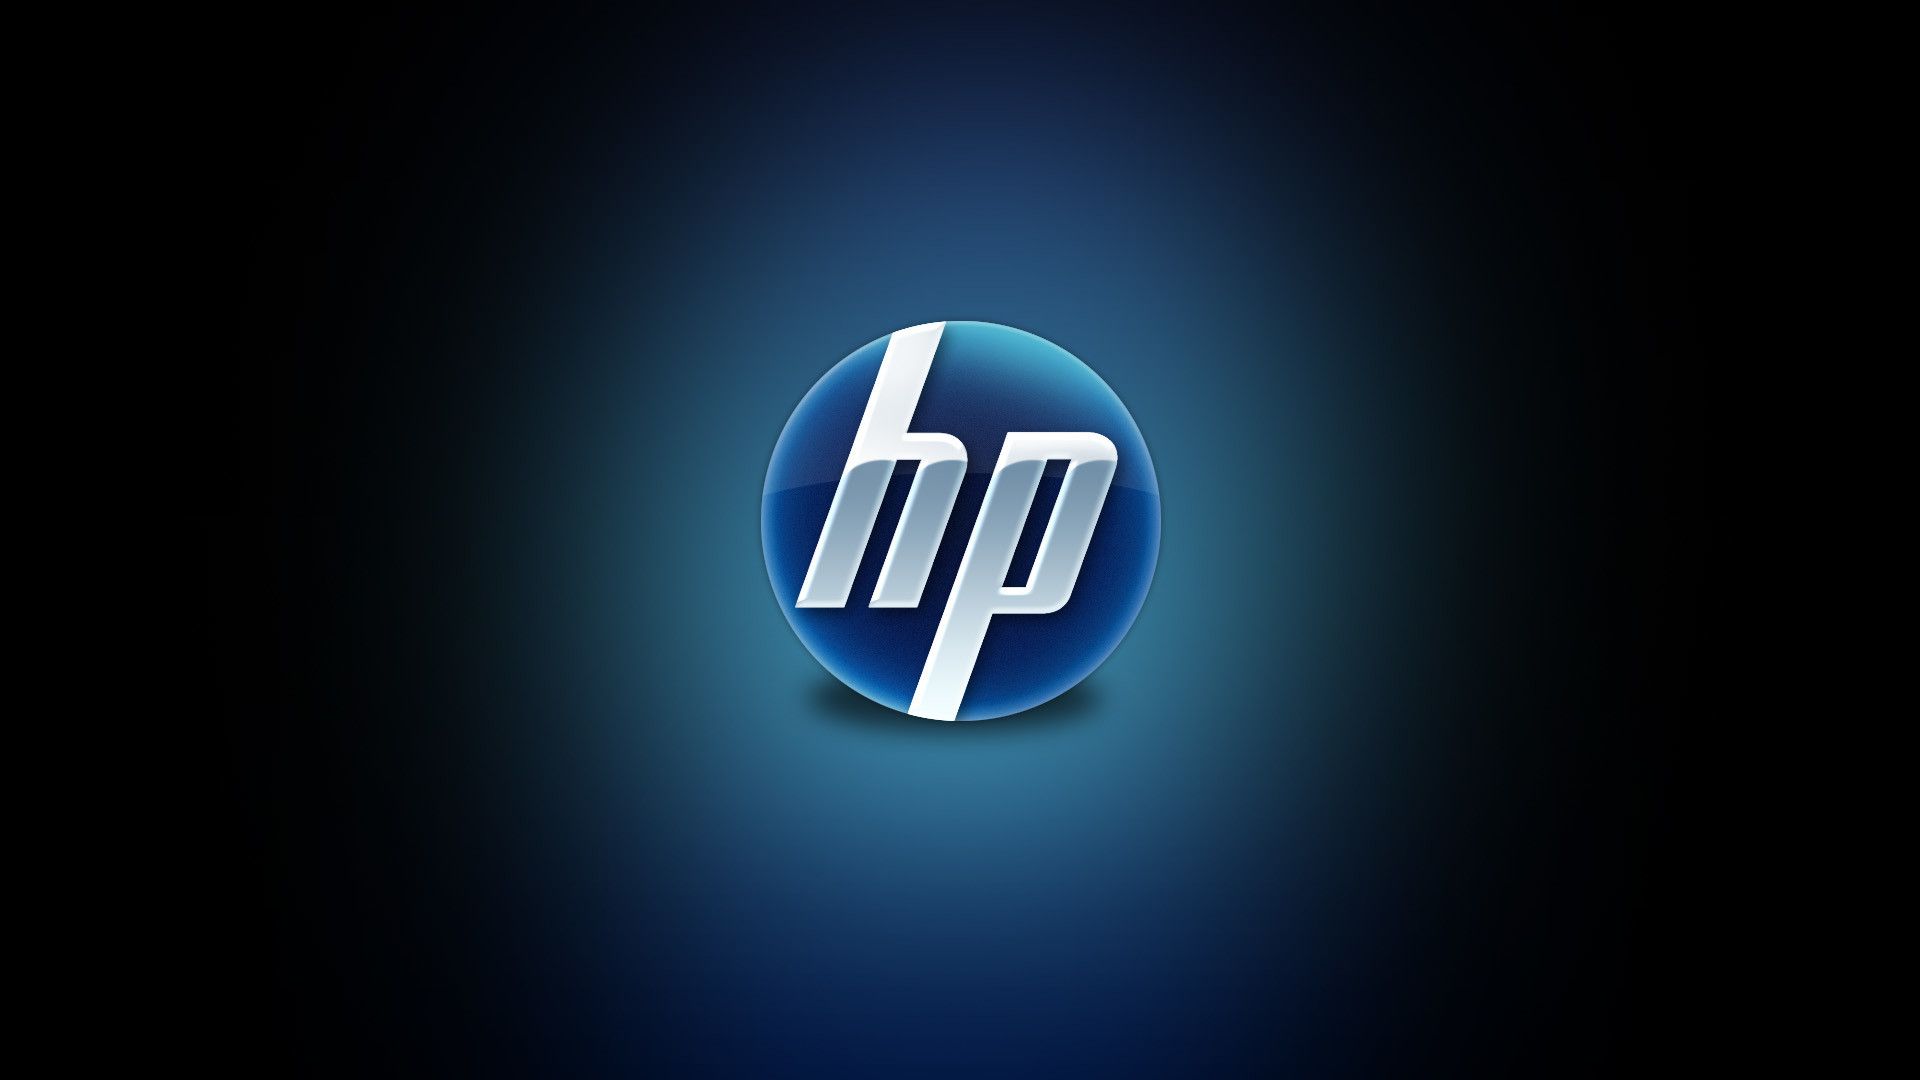 CEO-ul HP dezvăluie hardware IA "simplu" destinat să ajute afacerile